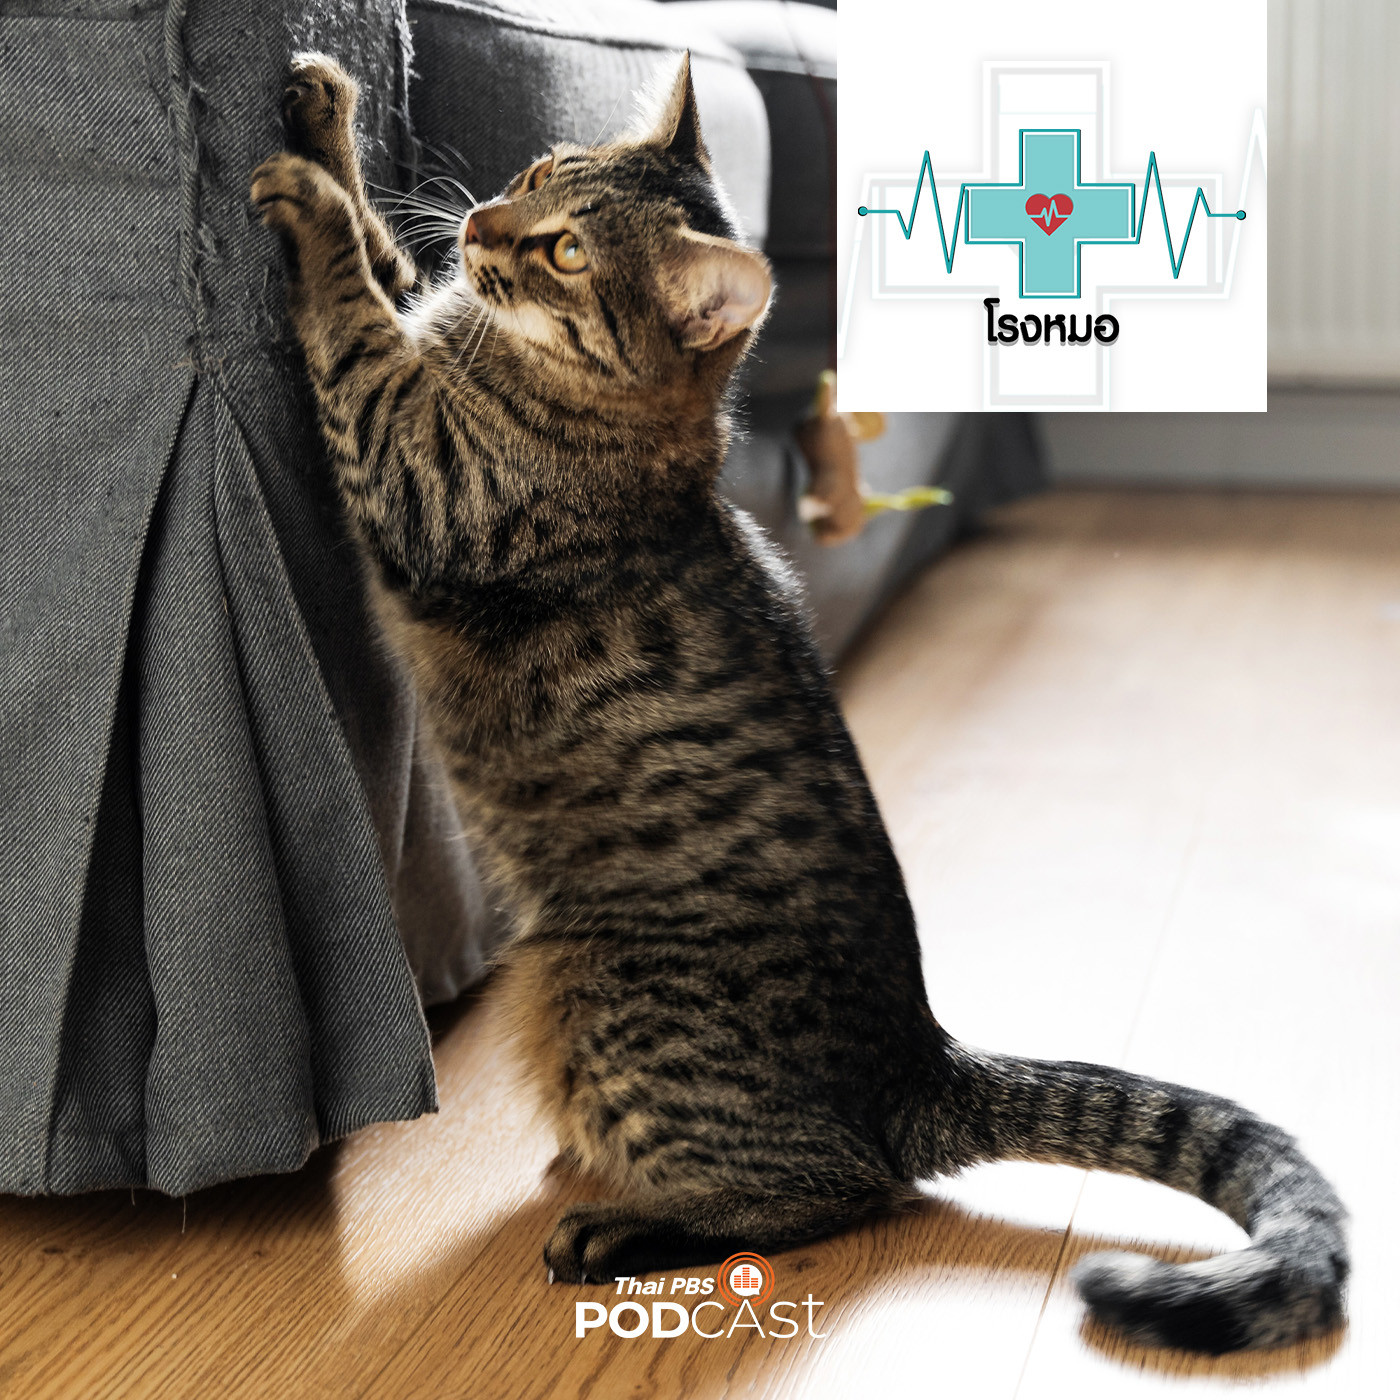 โรงหมอ EP. 844: สัญชาตญาณหรือพฤติกรรมของแมว ที่คนเลี้ยงต้องเข้าใจ